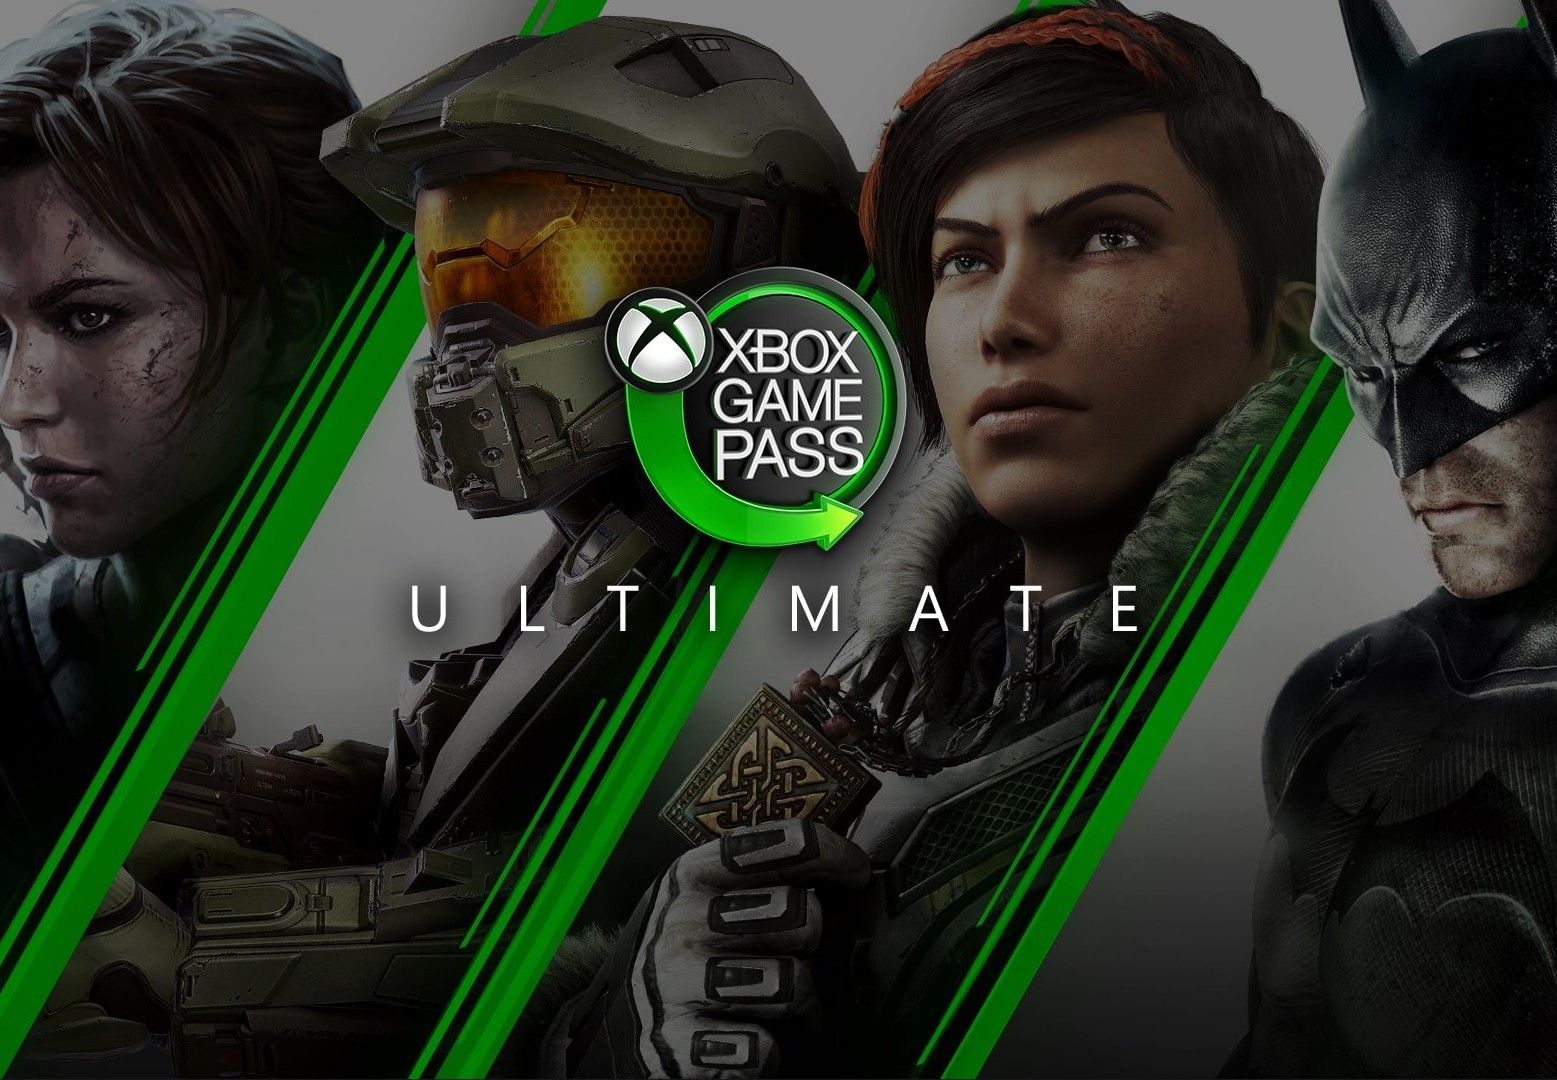 Xbox altera conversão de Live Gold para Game Pass; veja como ficou